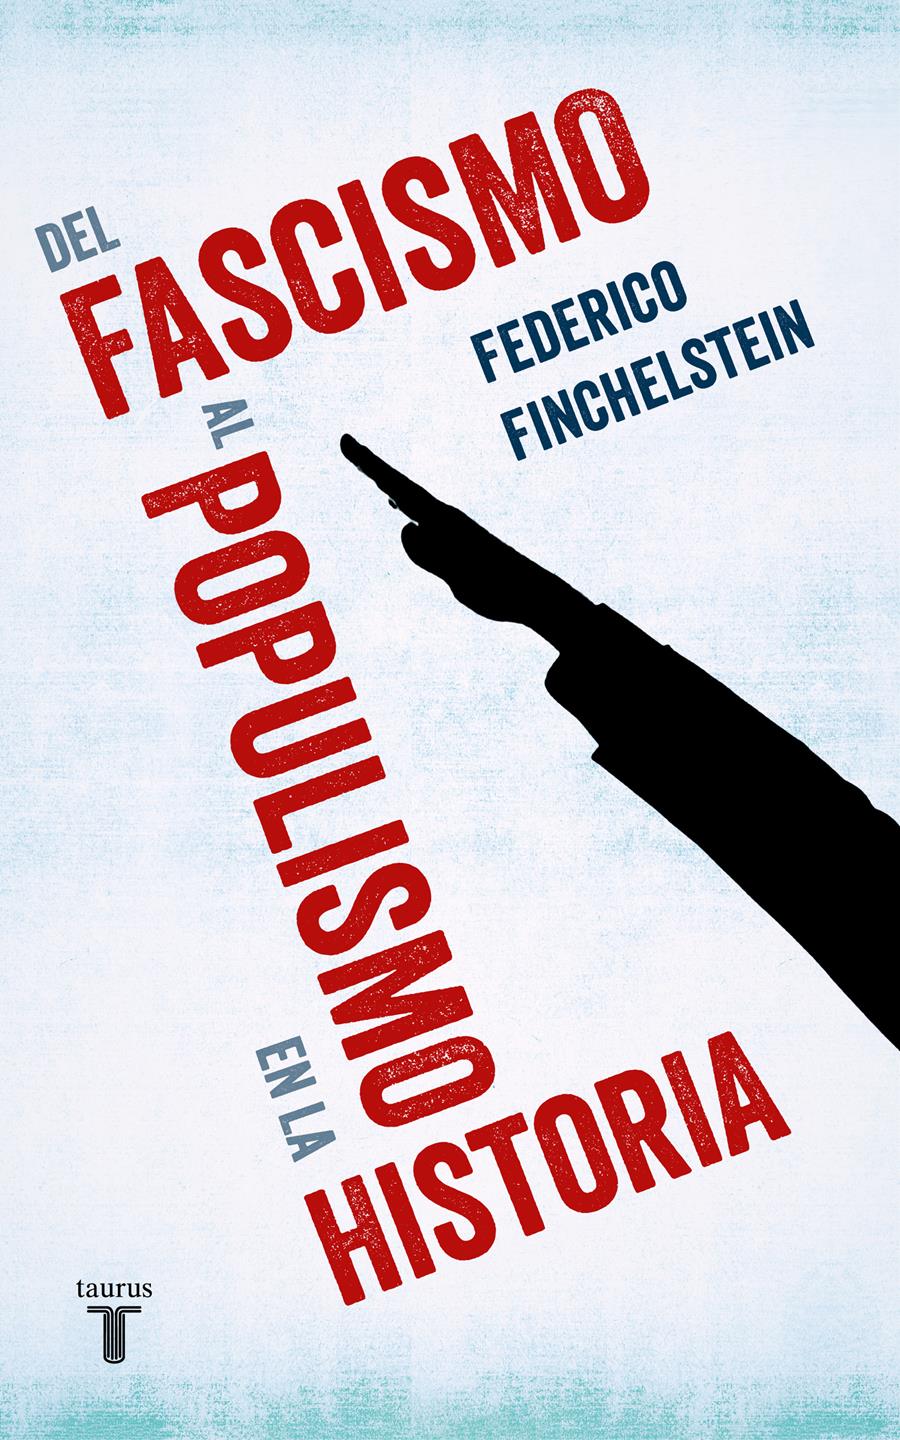 Del fascismo al populismo en la historia | Finchelstein, Federico